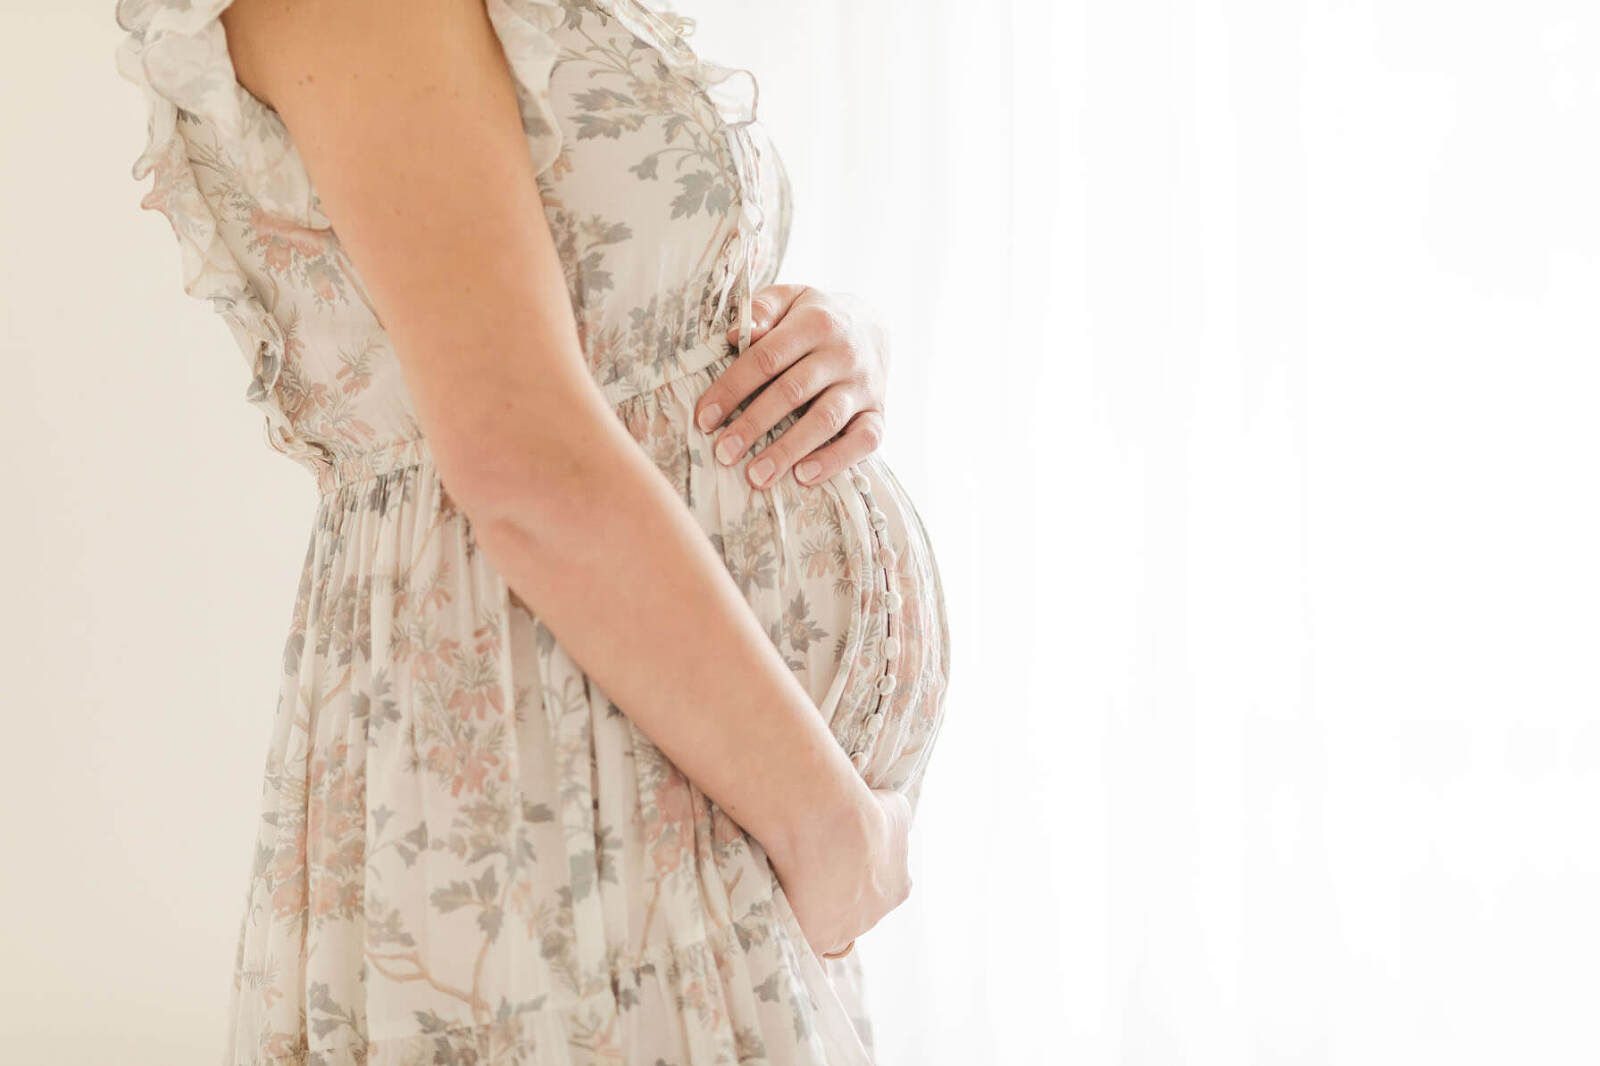 Birmingham Maternity photography backlit image